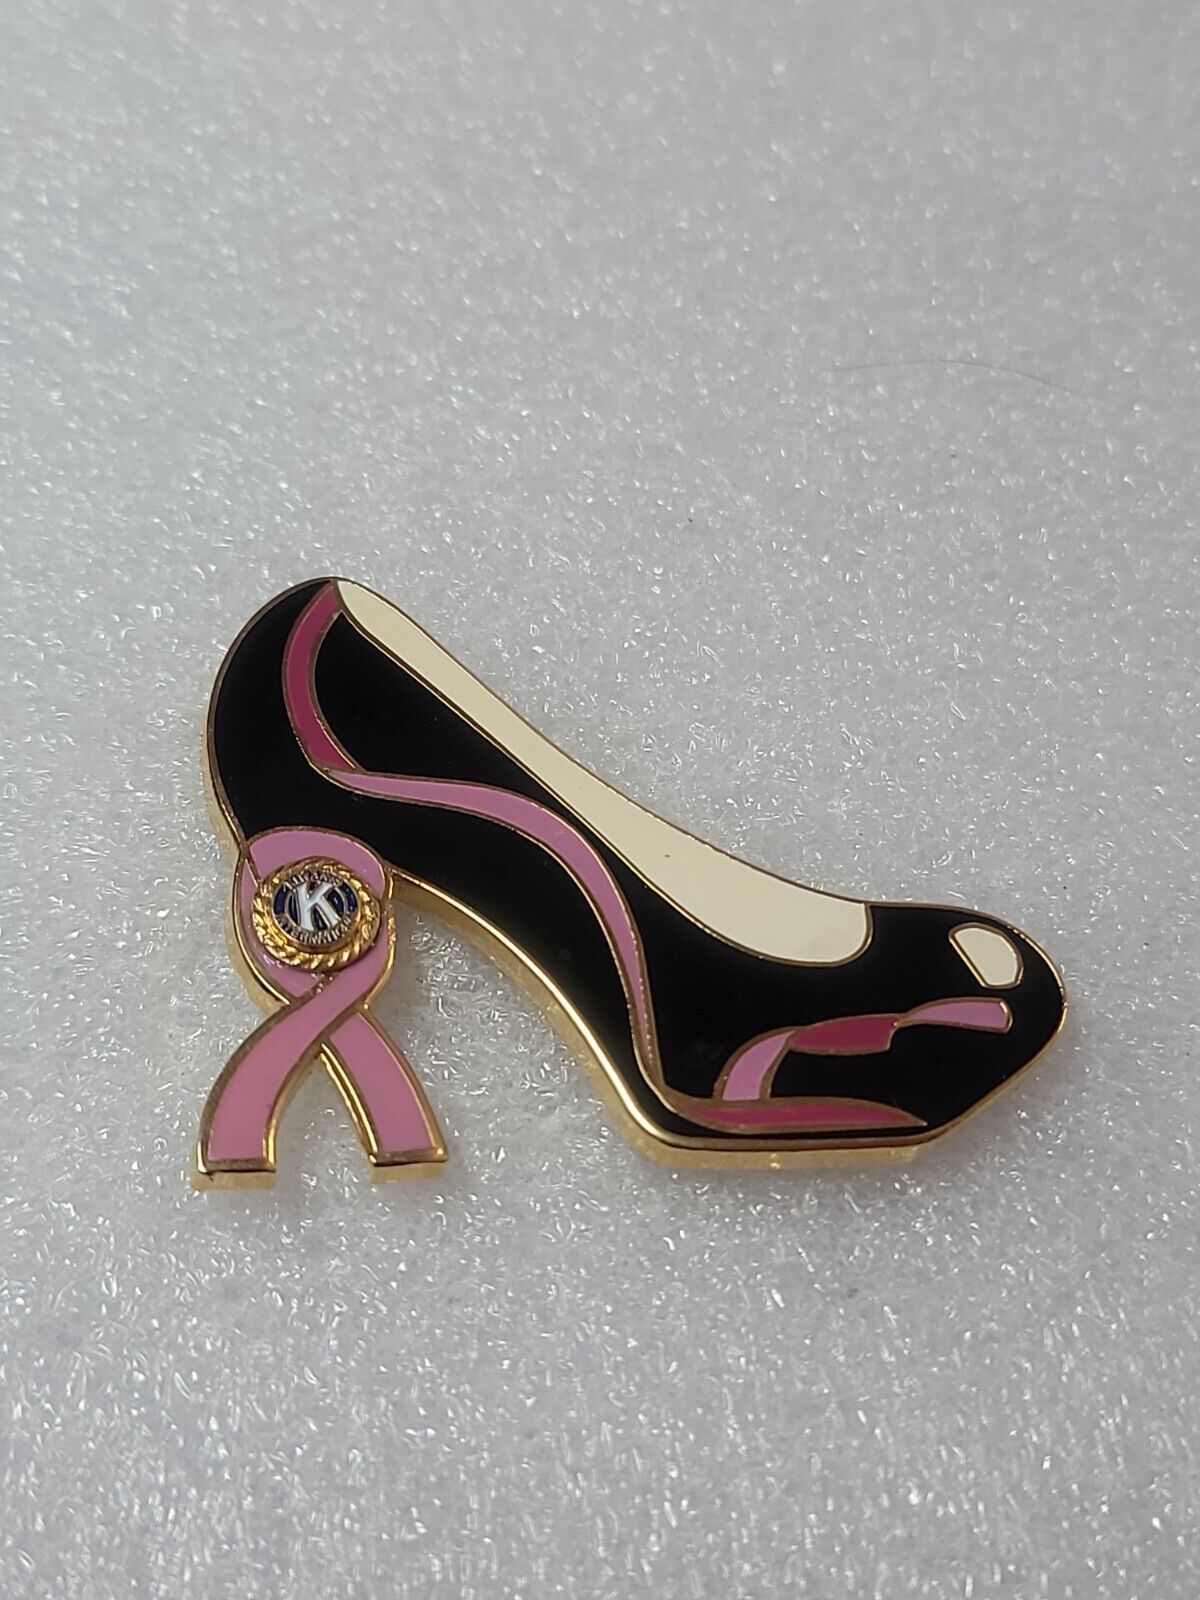 Kiwanis International High Heel Shoe Pin Breast Cancer Ribbon Black Pink Enamel